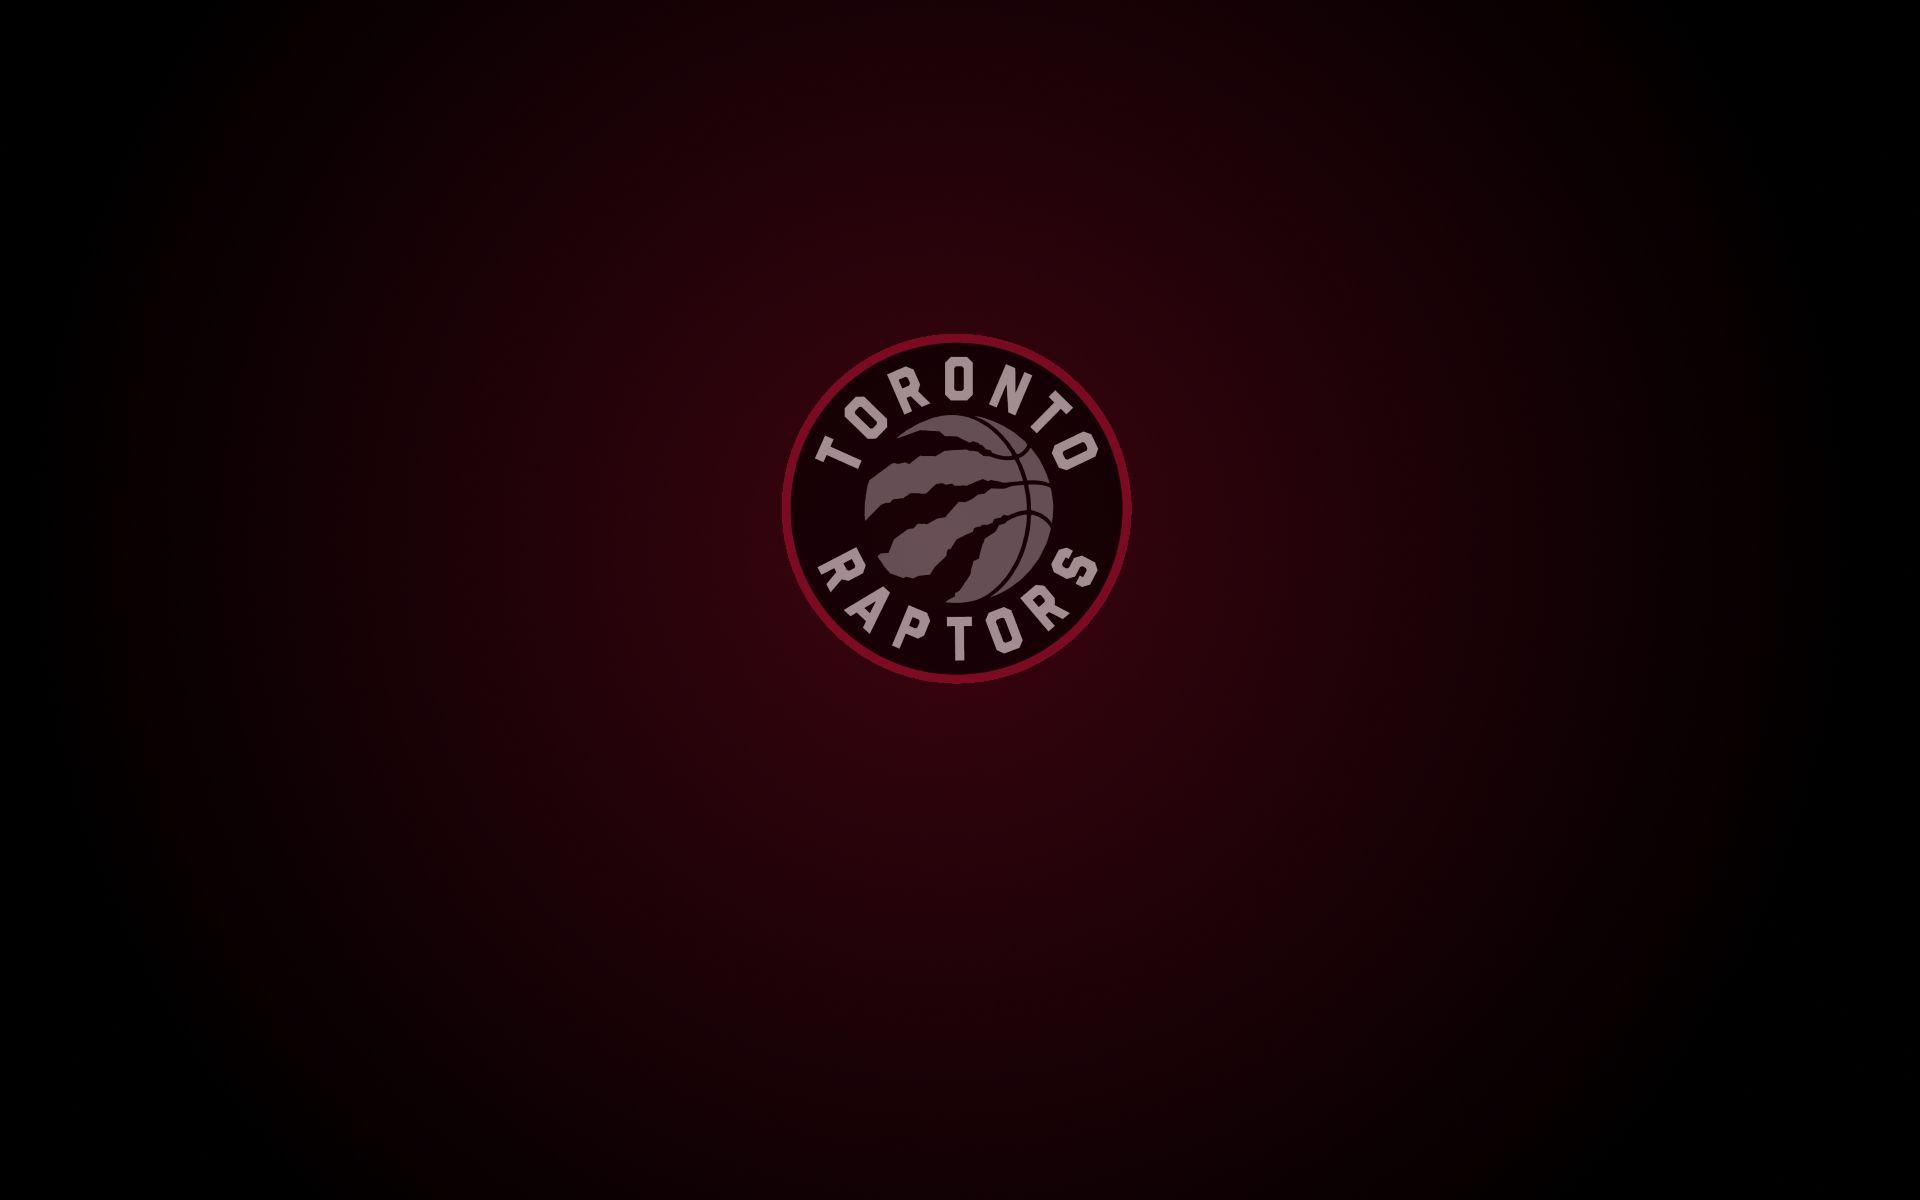 Toronto Raptors Wallpapers - Top Free